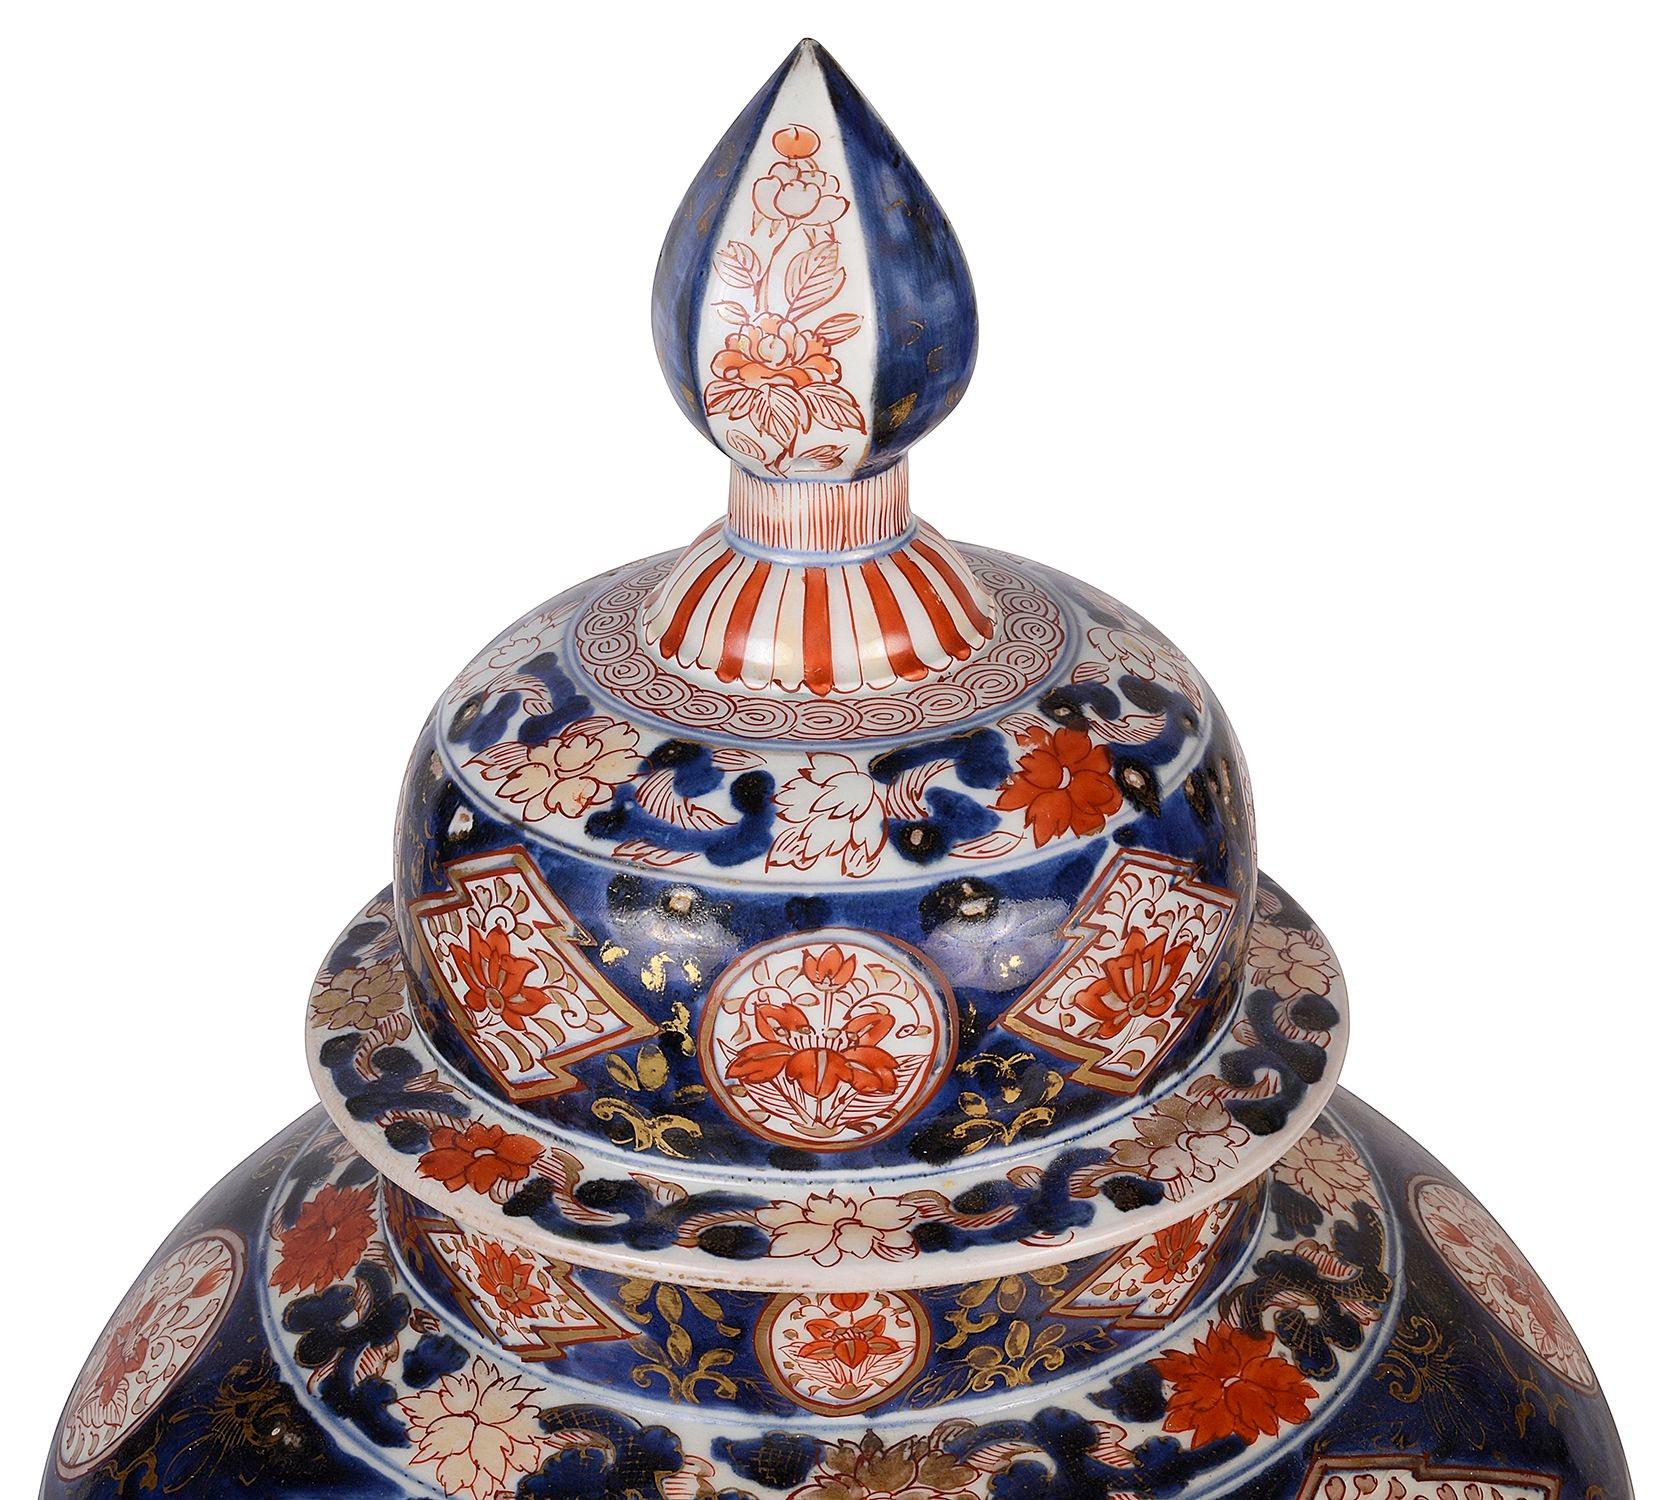 Eine beeindruckende japanische Imari Arita Vase mit gemalten Tafeln, die eine Jagdszene und Blumen in einer Vase darstellen, montiert auf einem wunderschönen patinierten Rokokoständer aus Ormolu.
(Bei Bedarf können wir Vasen in Lampen